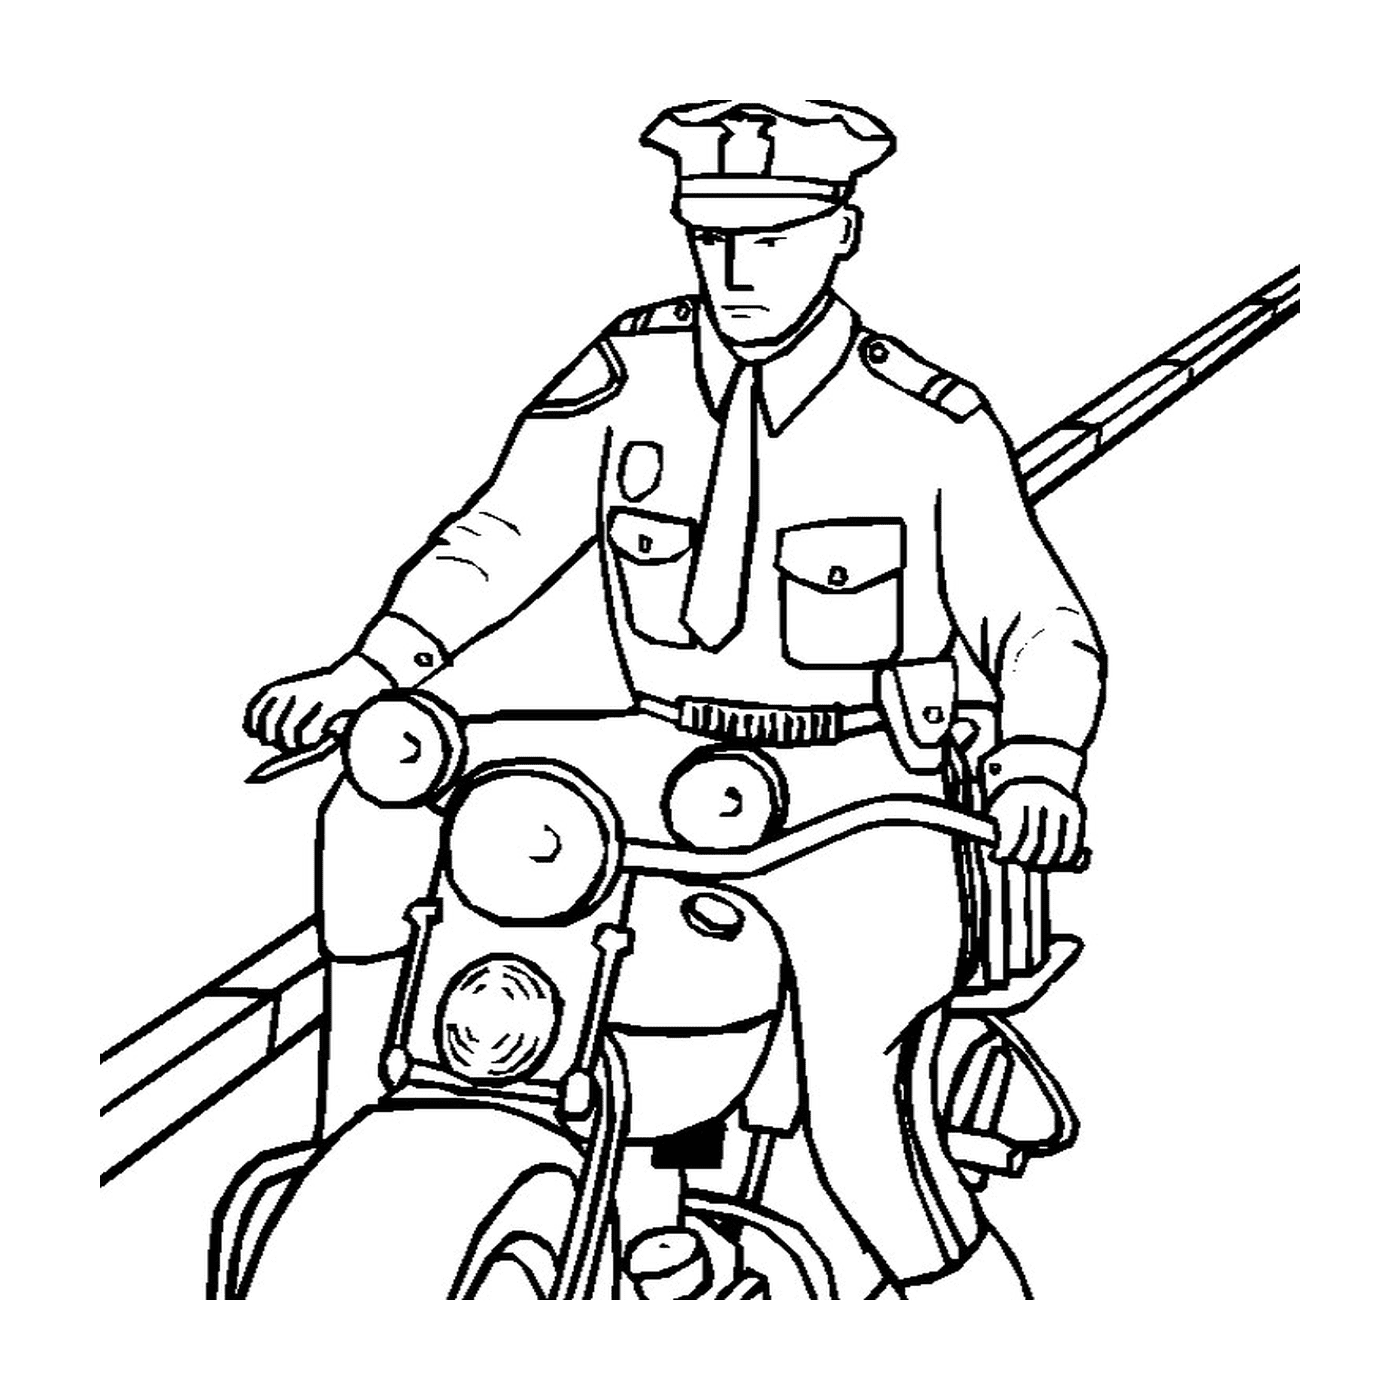  Вождение мотоцикла полицейским 